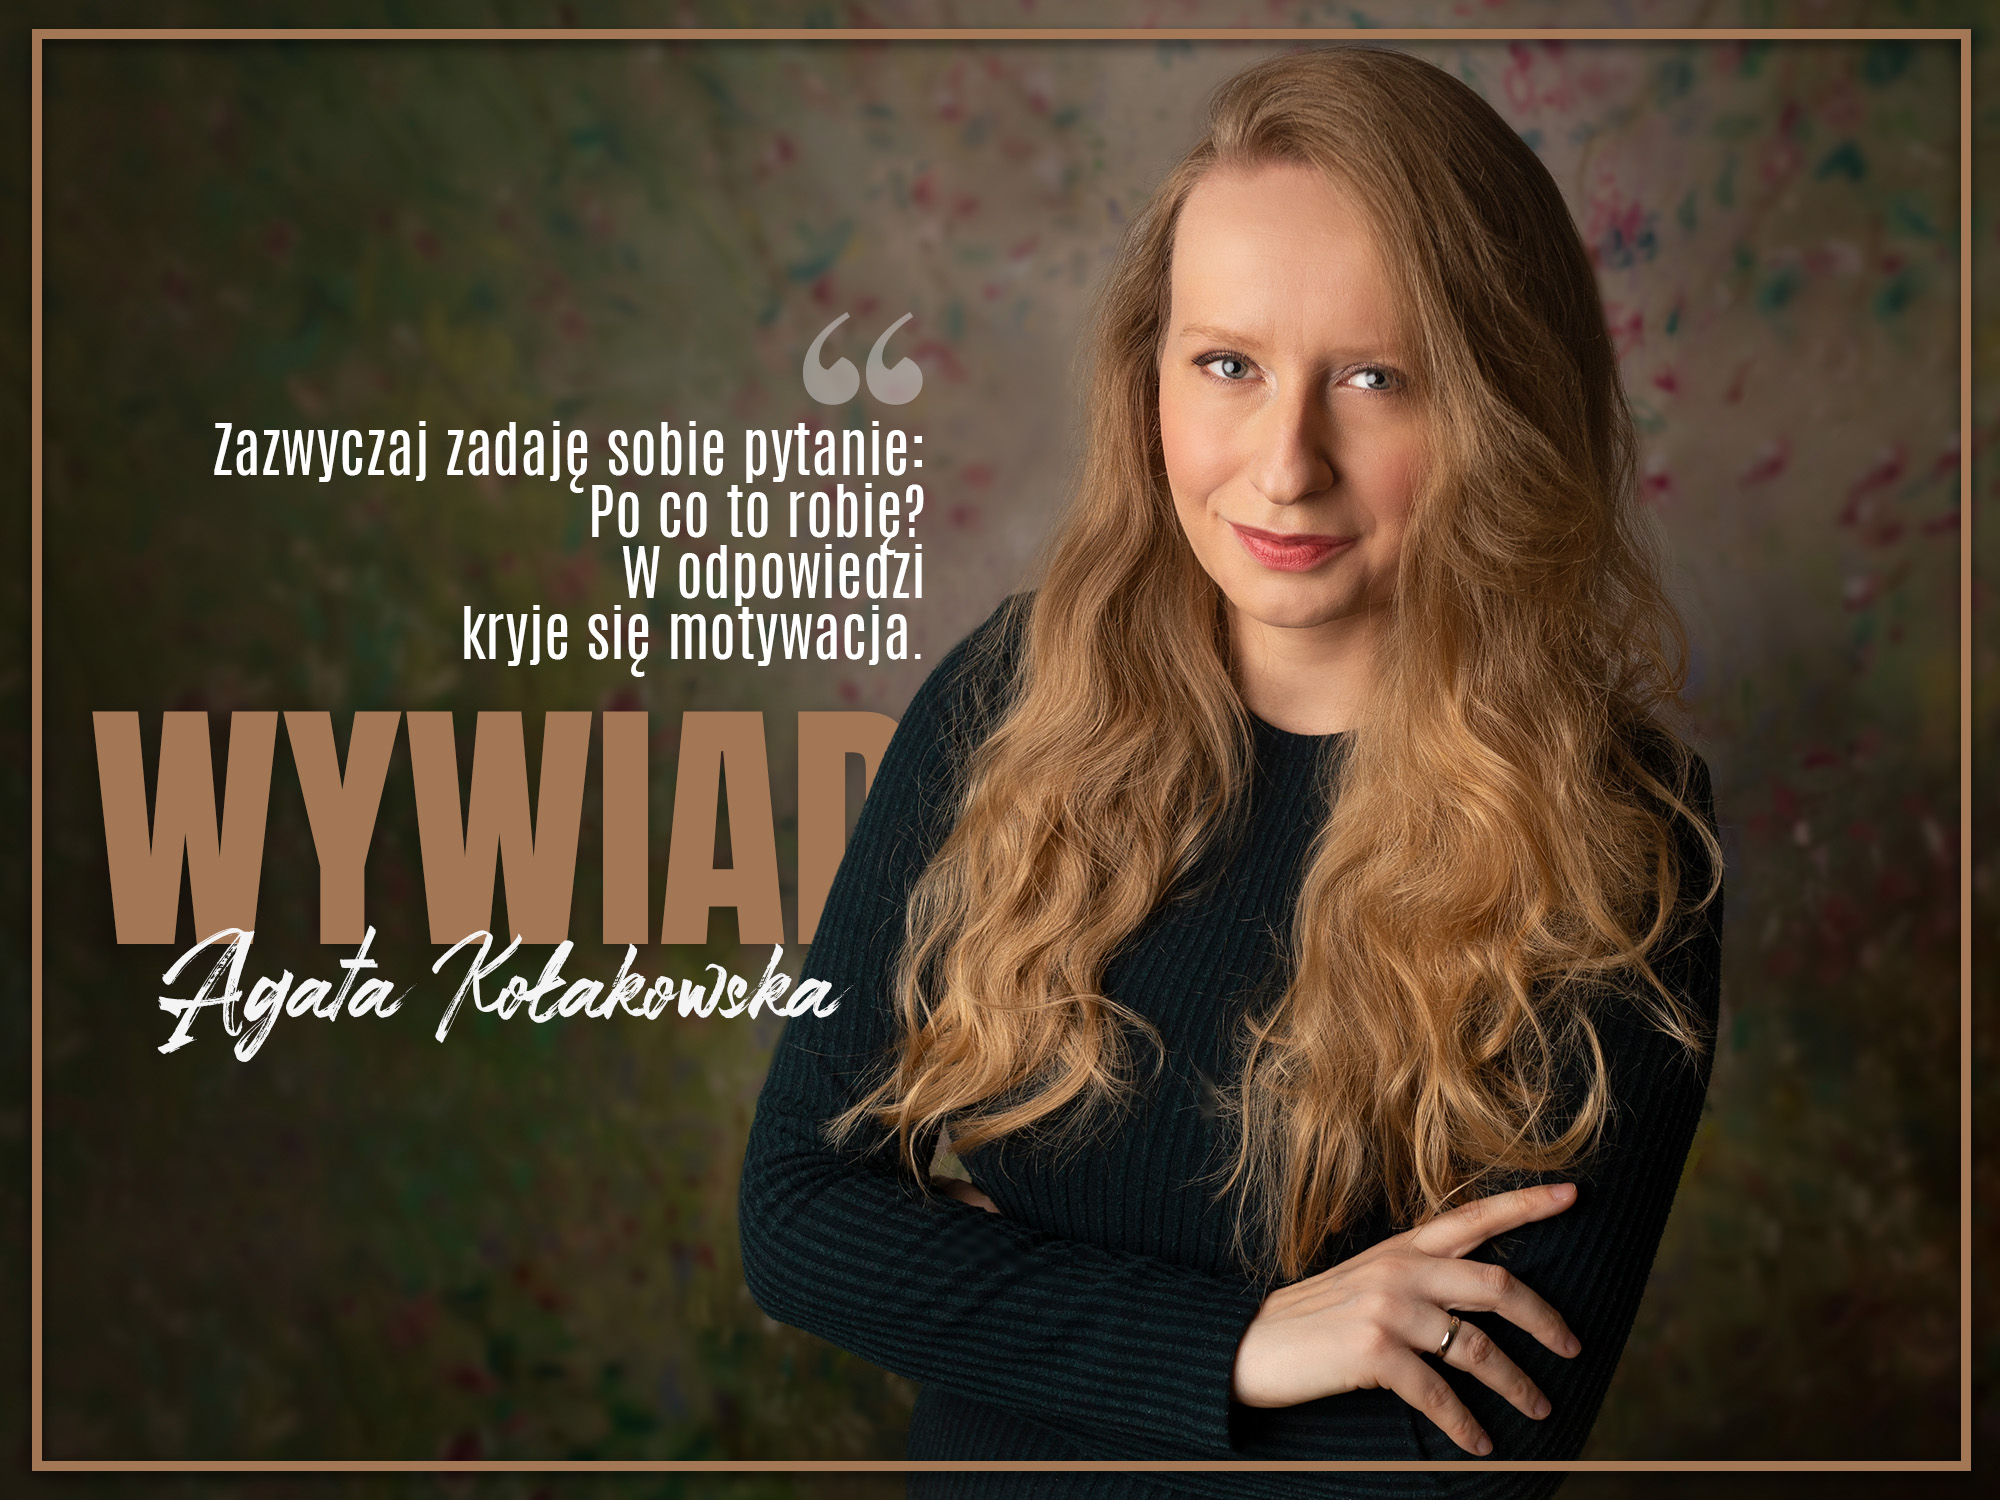 Wywiad - Agata Kołakowska